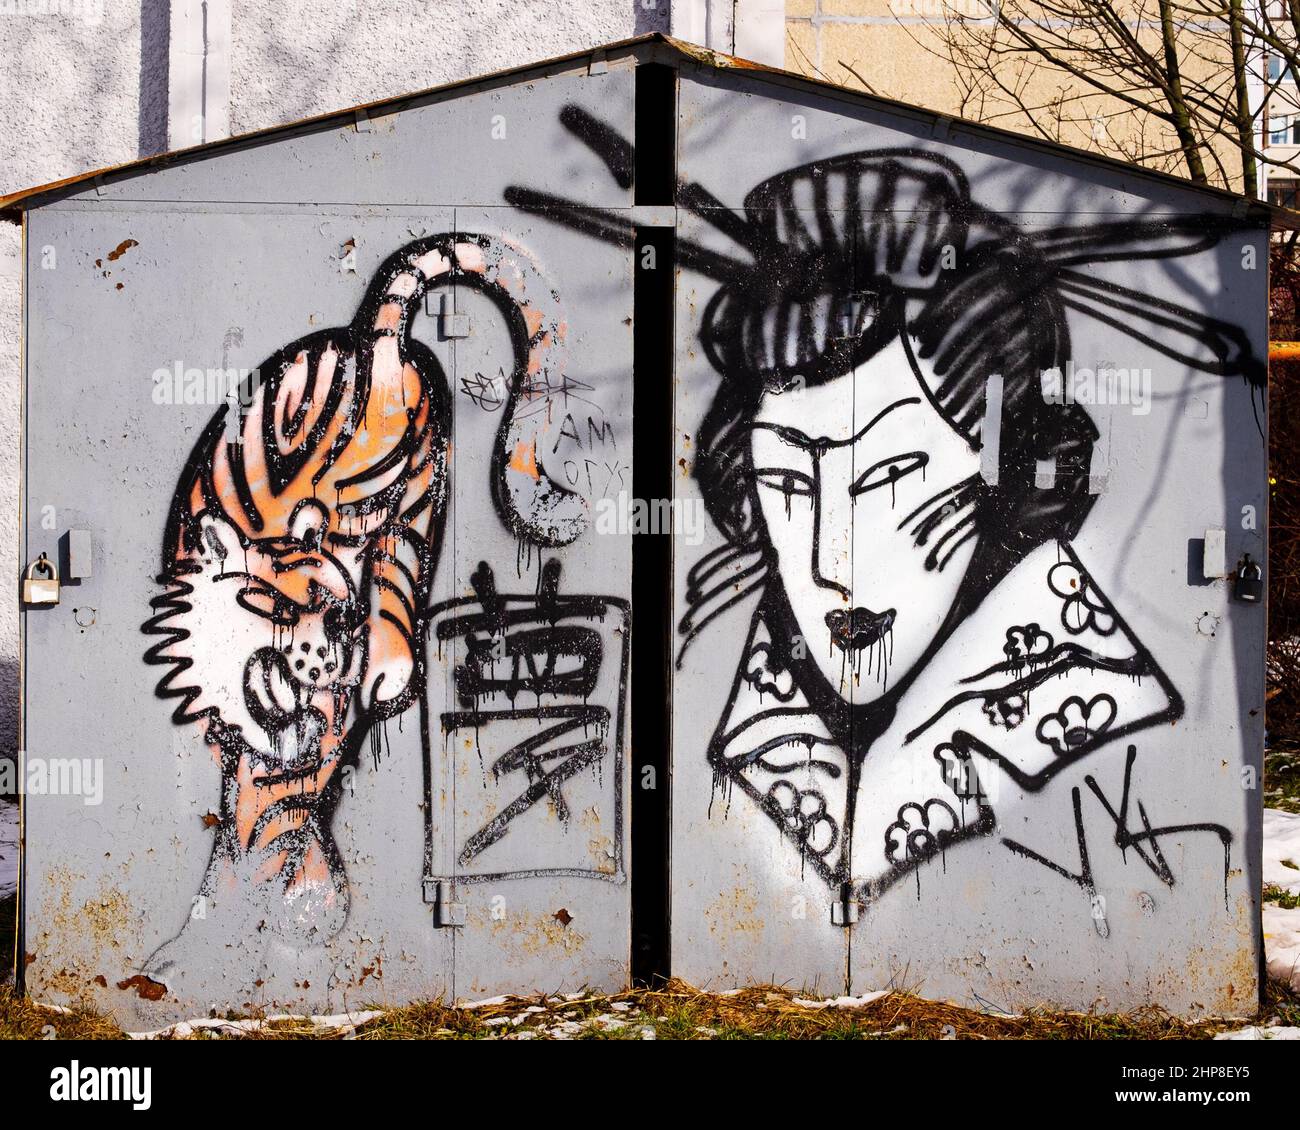 Art de la rue motifs japonais. Dessin d'une geisha et d'un tigre sur le mur d'un garage en métal. Auteur inconnu. Minsk (Bélarus) Banque D'Images